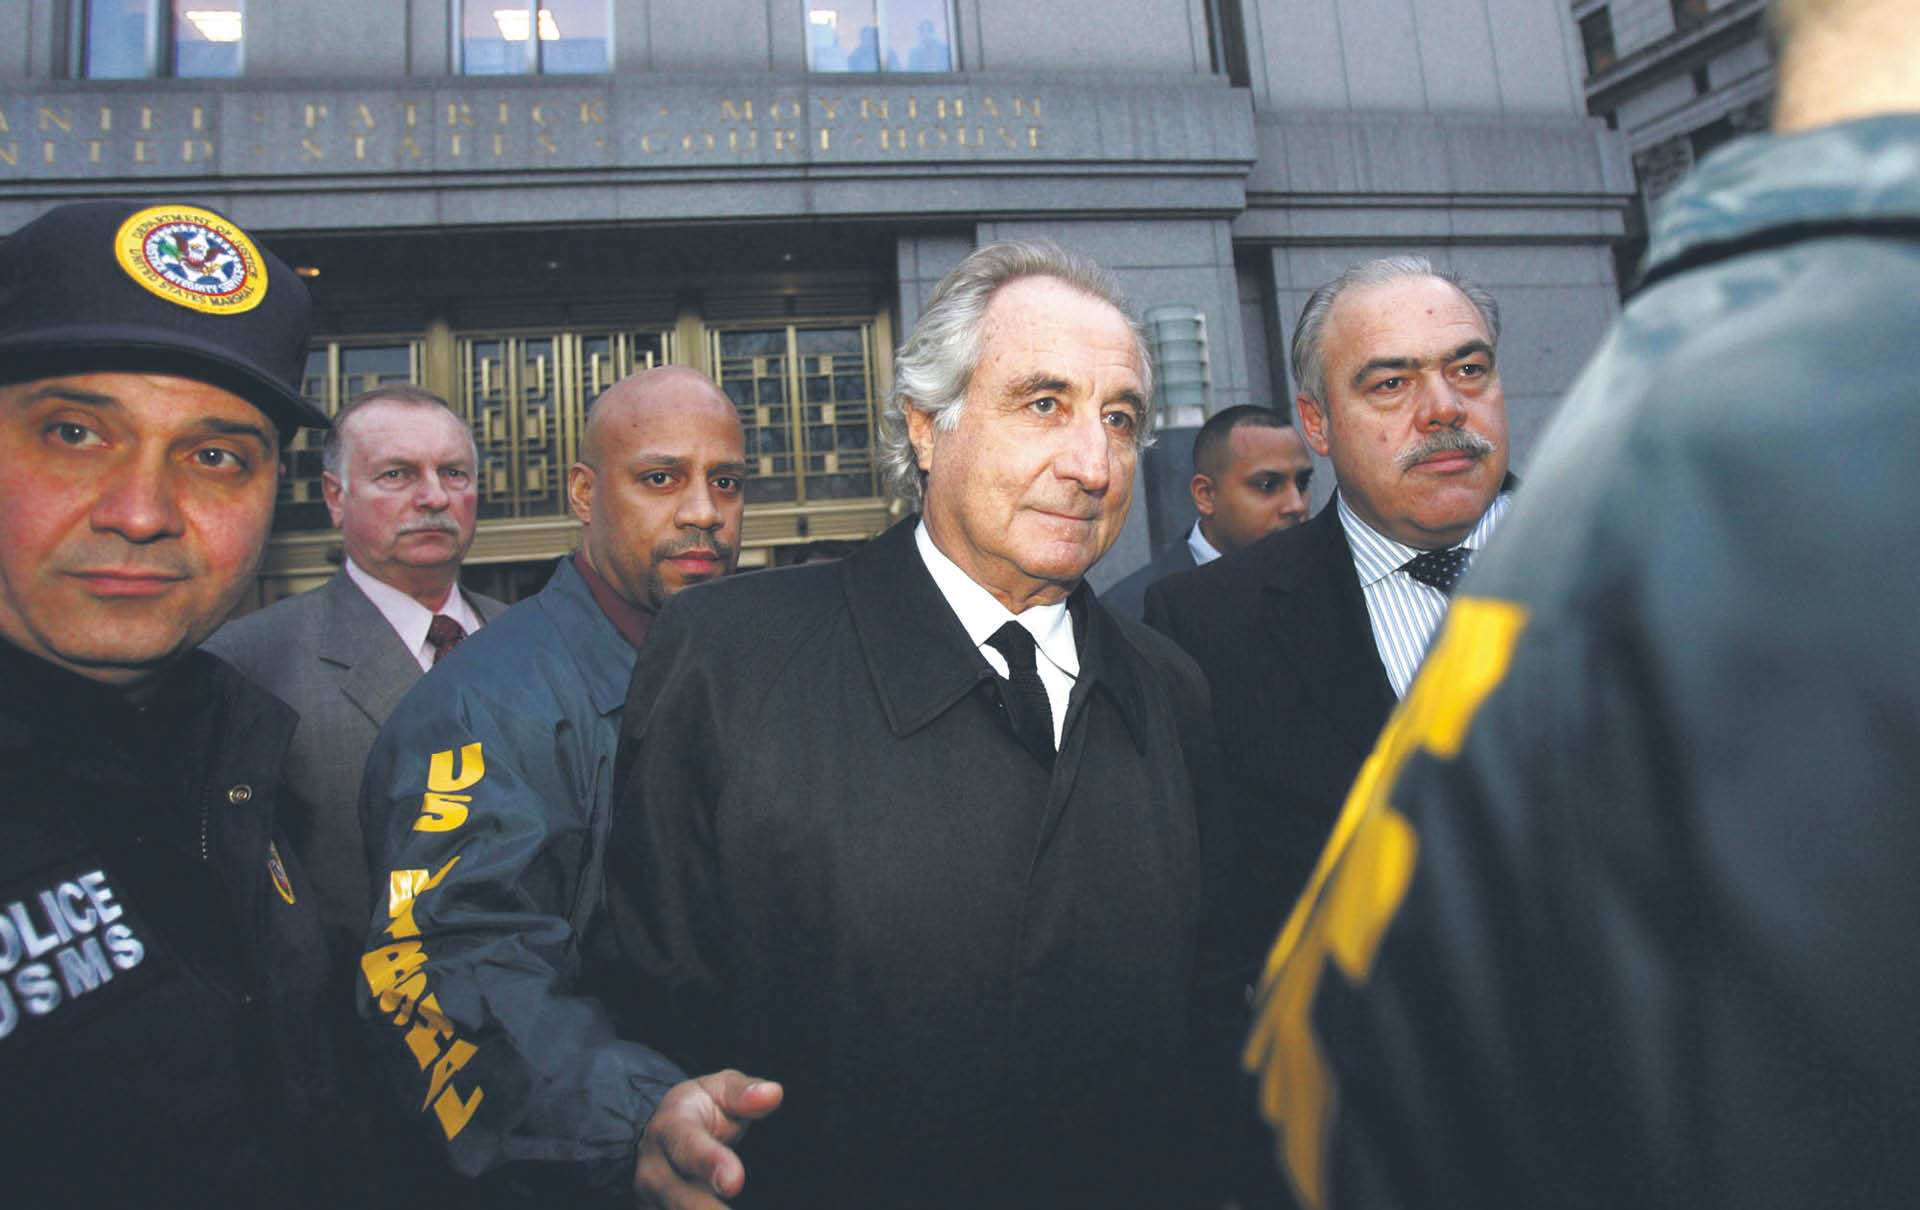 Nieżyjący już Bernard Madoff został skazany w USA na 150 lat więzienia za oszustwa na kwotę kilkunastu miliardów dolarów, ale wcześniej jego piramida finansowa skutecznie funkcjonowała przez kilkadziesiąt lat